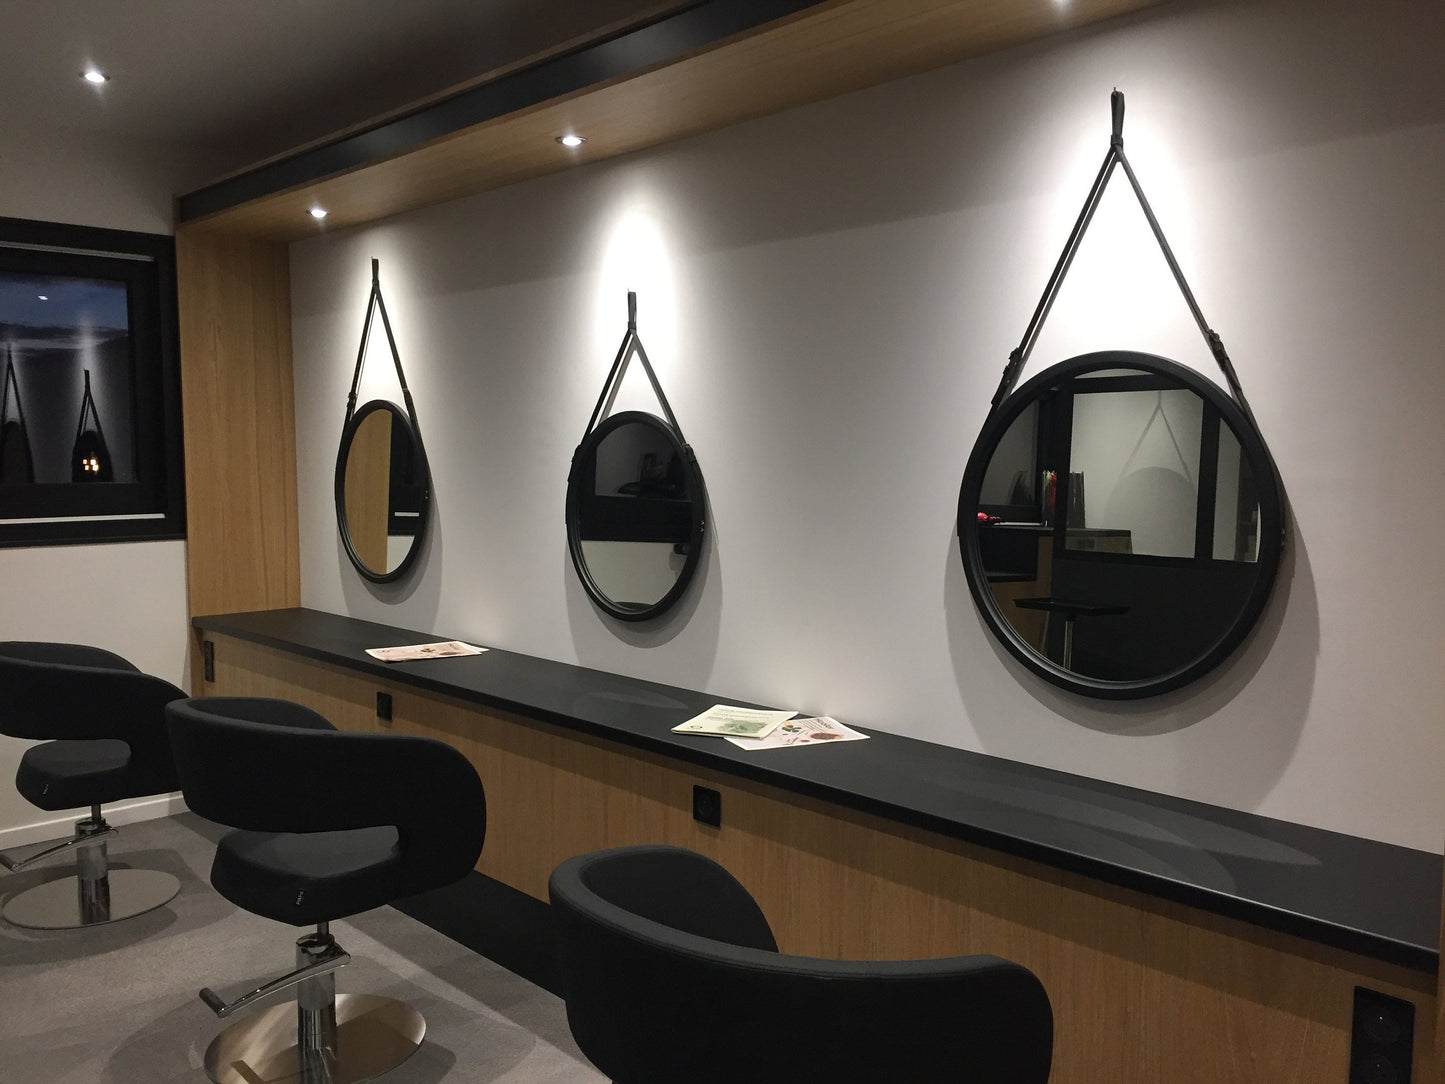 Wood frame bathroom mirror vanity, Modern round mirror wall, Large circle mirror wood framed, Wall scandinavian strap mirror hallway